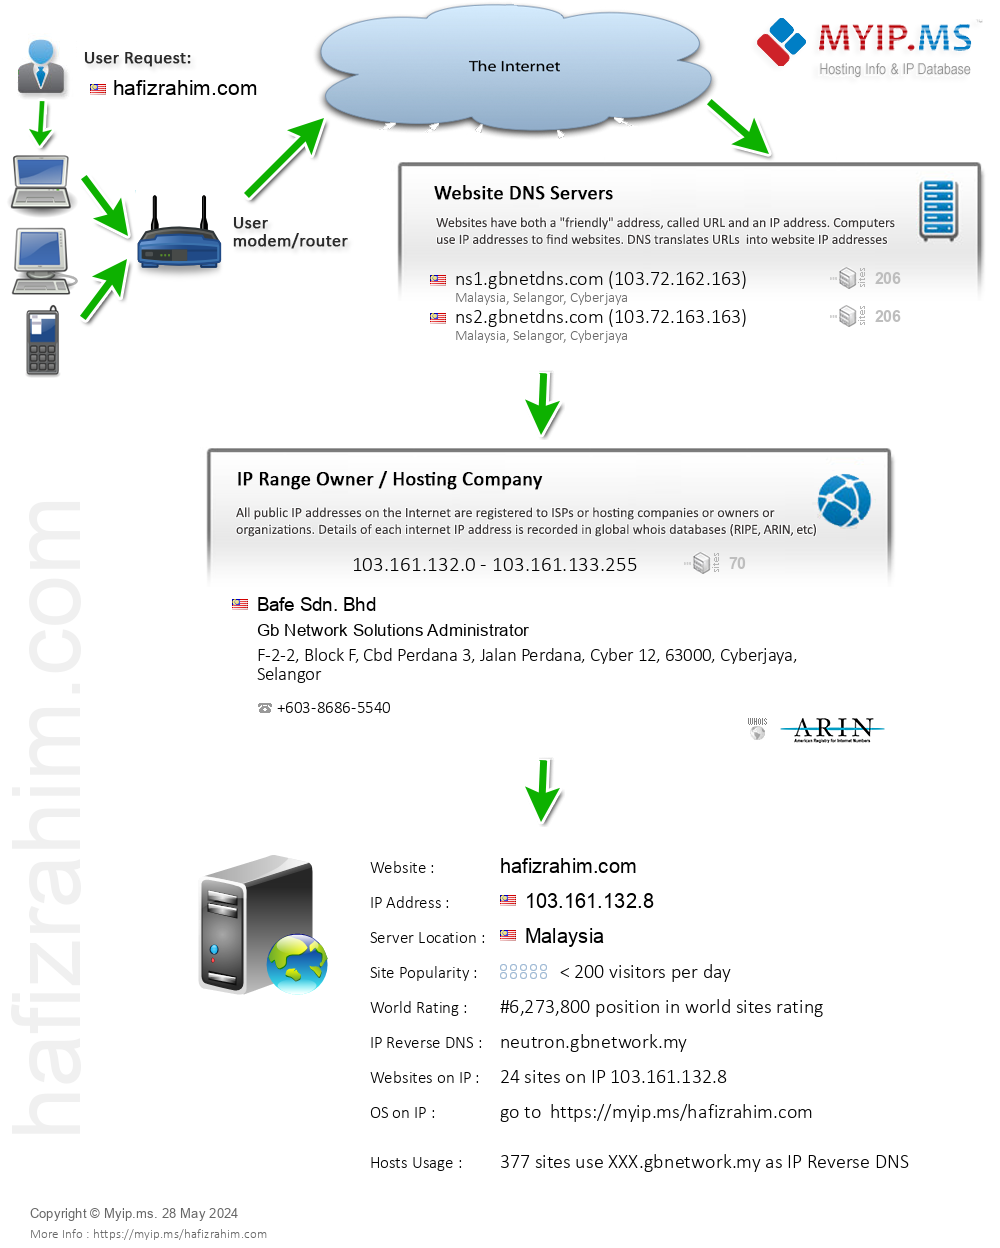 Hafizrahim.com - Website Hosting Visual IP Diagram